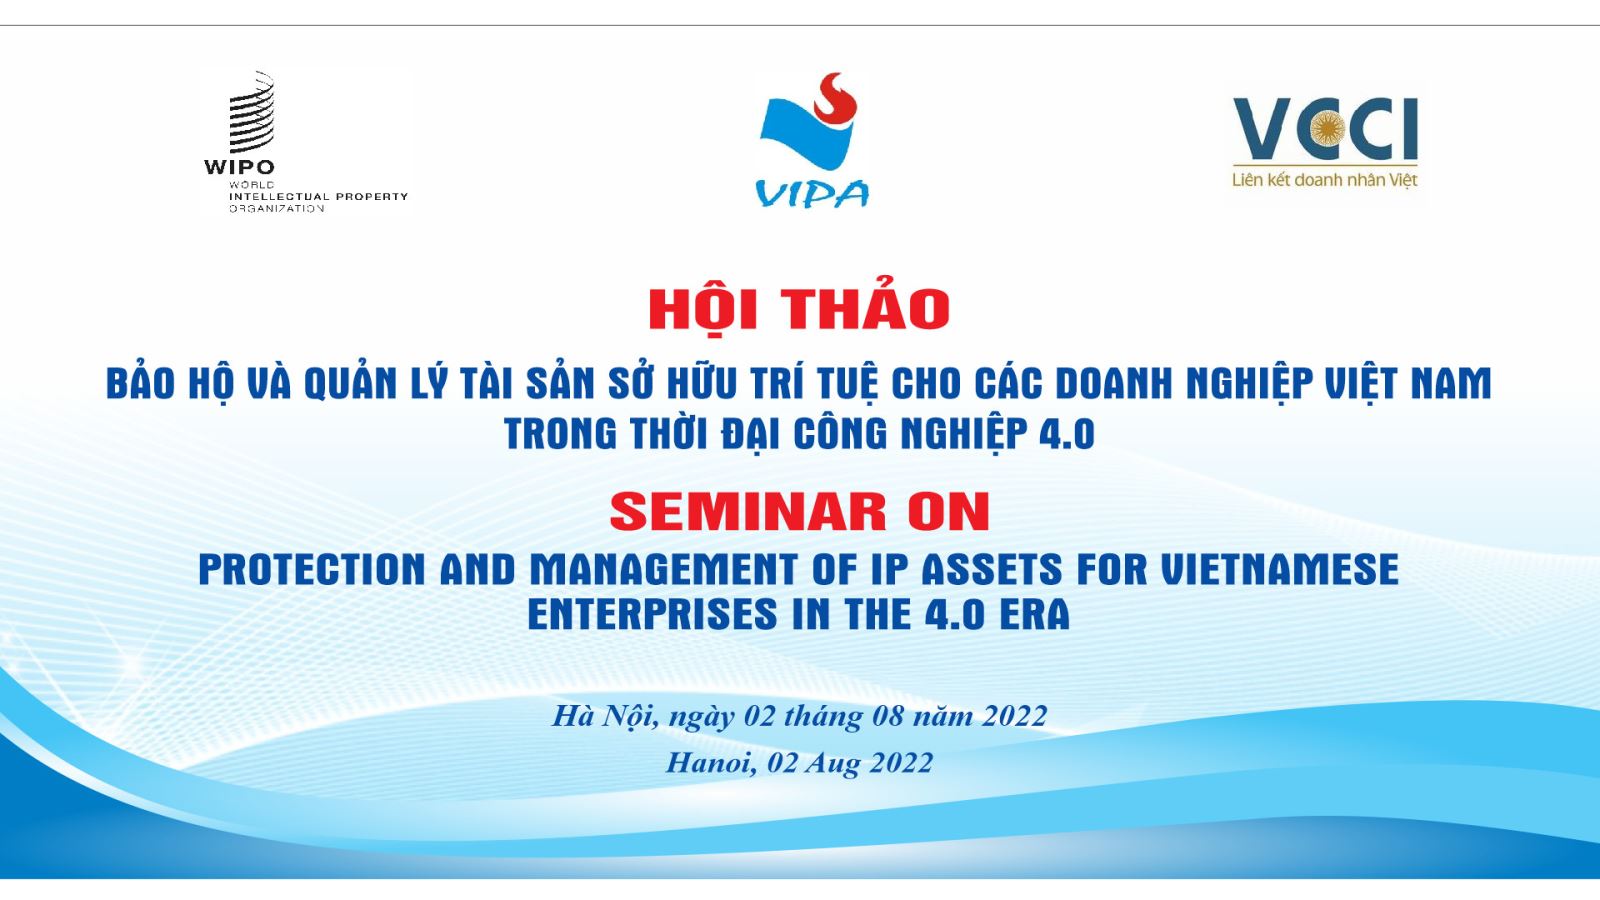 Hội thảo “Bảo hộ và quản lý tài sản sở hữu trí tuệ cho doanh nghiệp Việt Nam trong thời đại công nghiệp 4.0” tại Hà Nội